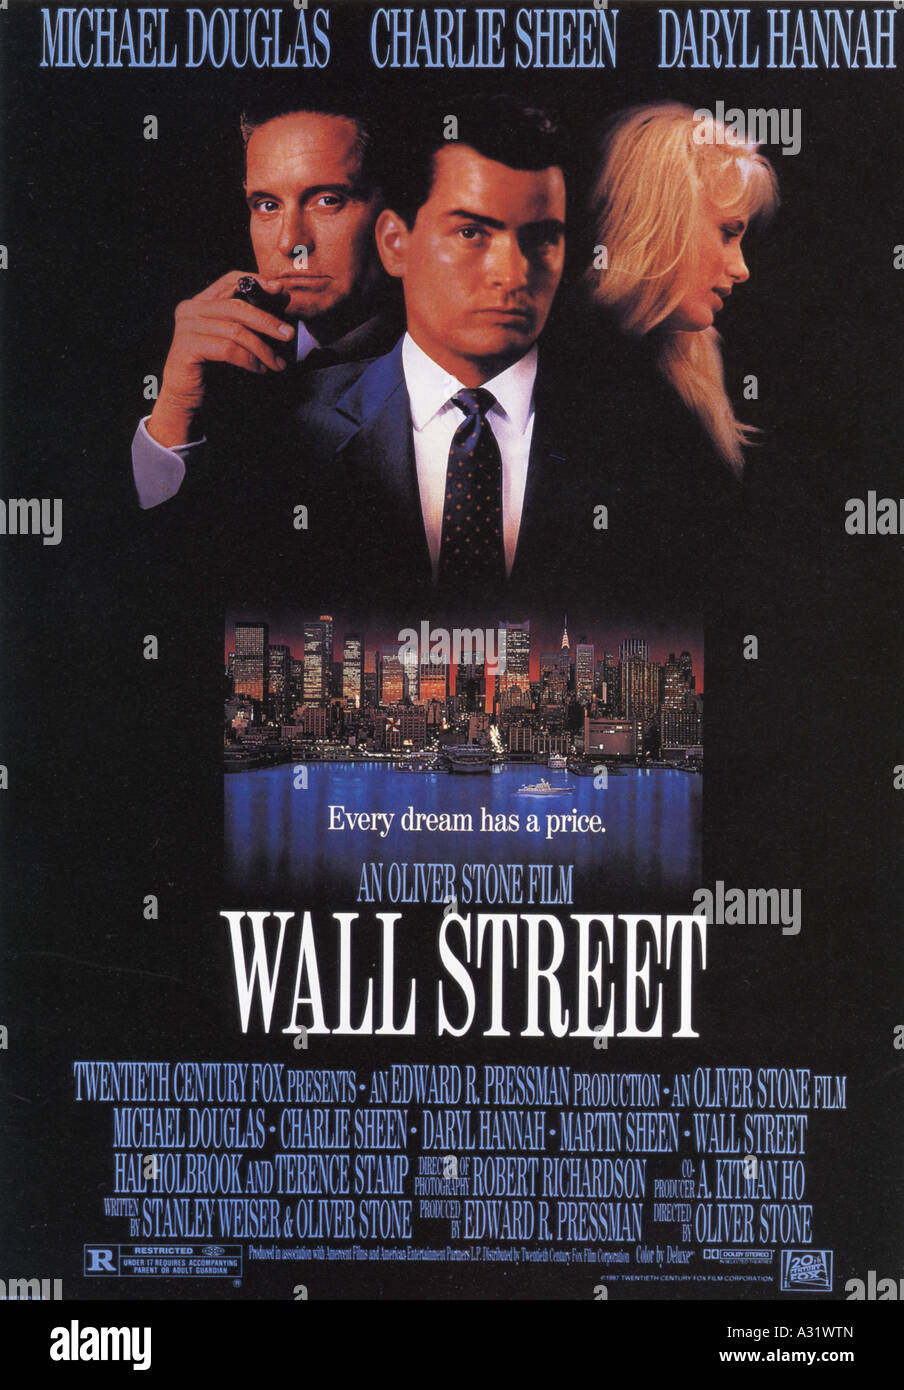 WALL STREET affiche pour 1987 Edward Pressman film avec Michael Douglas, Charlie Sheen et Daryl Hannah Banque D'Images